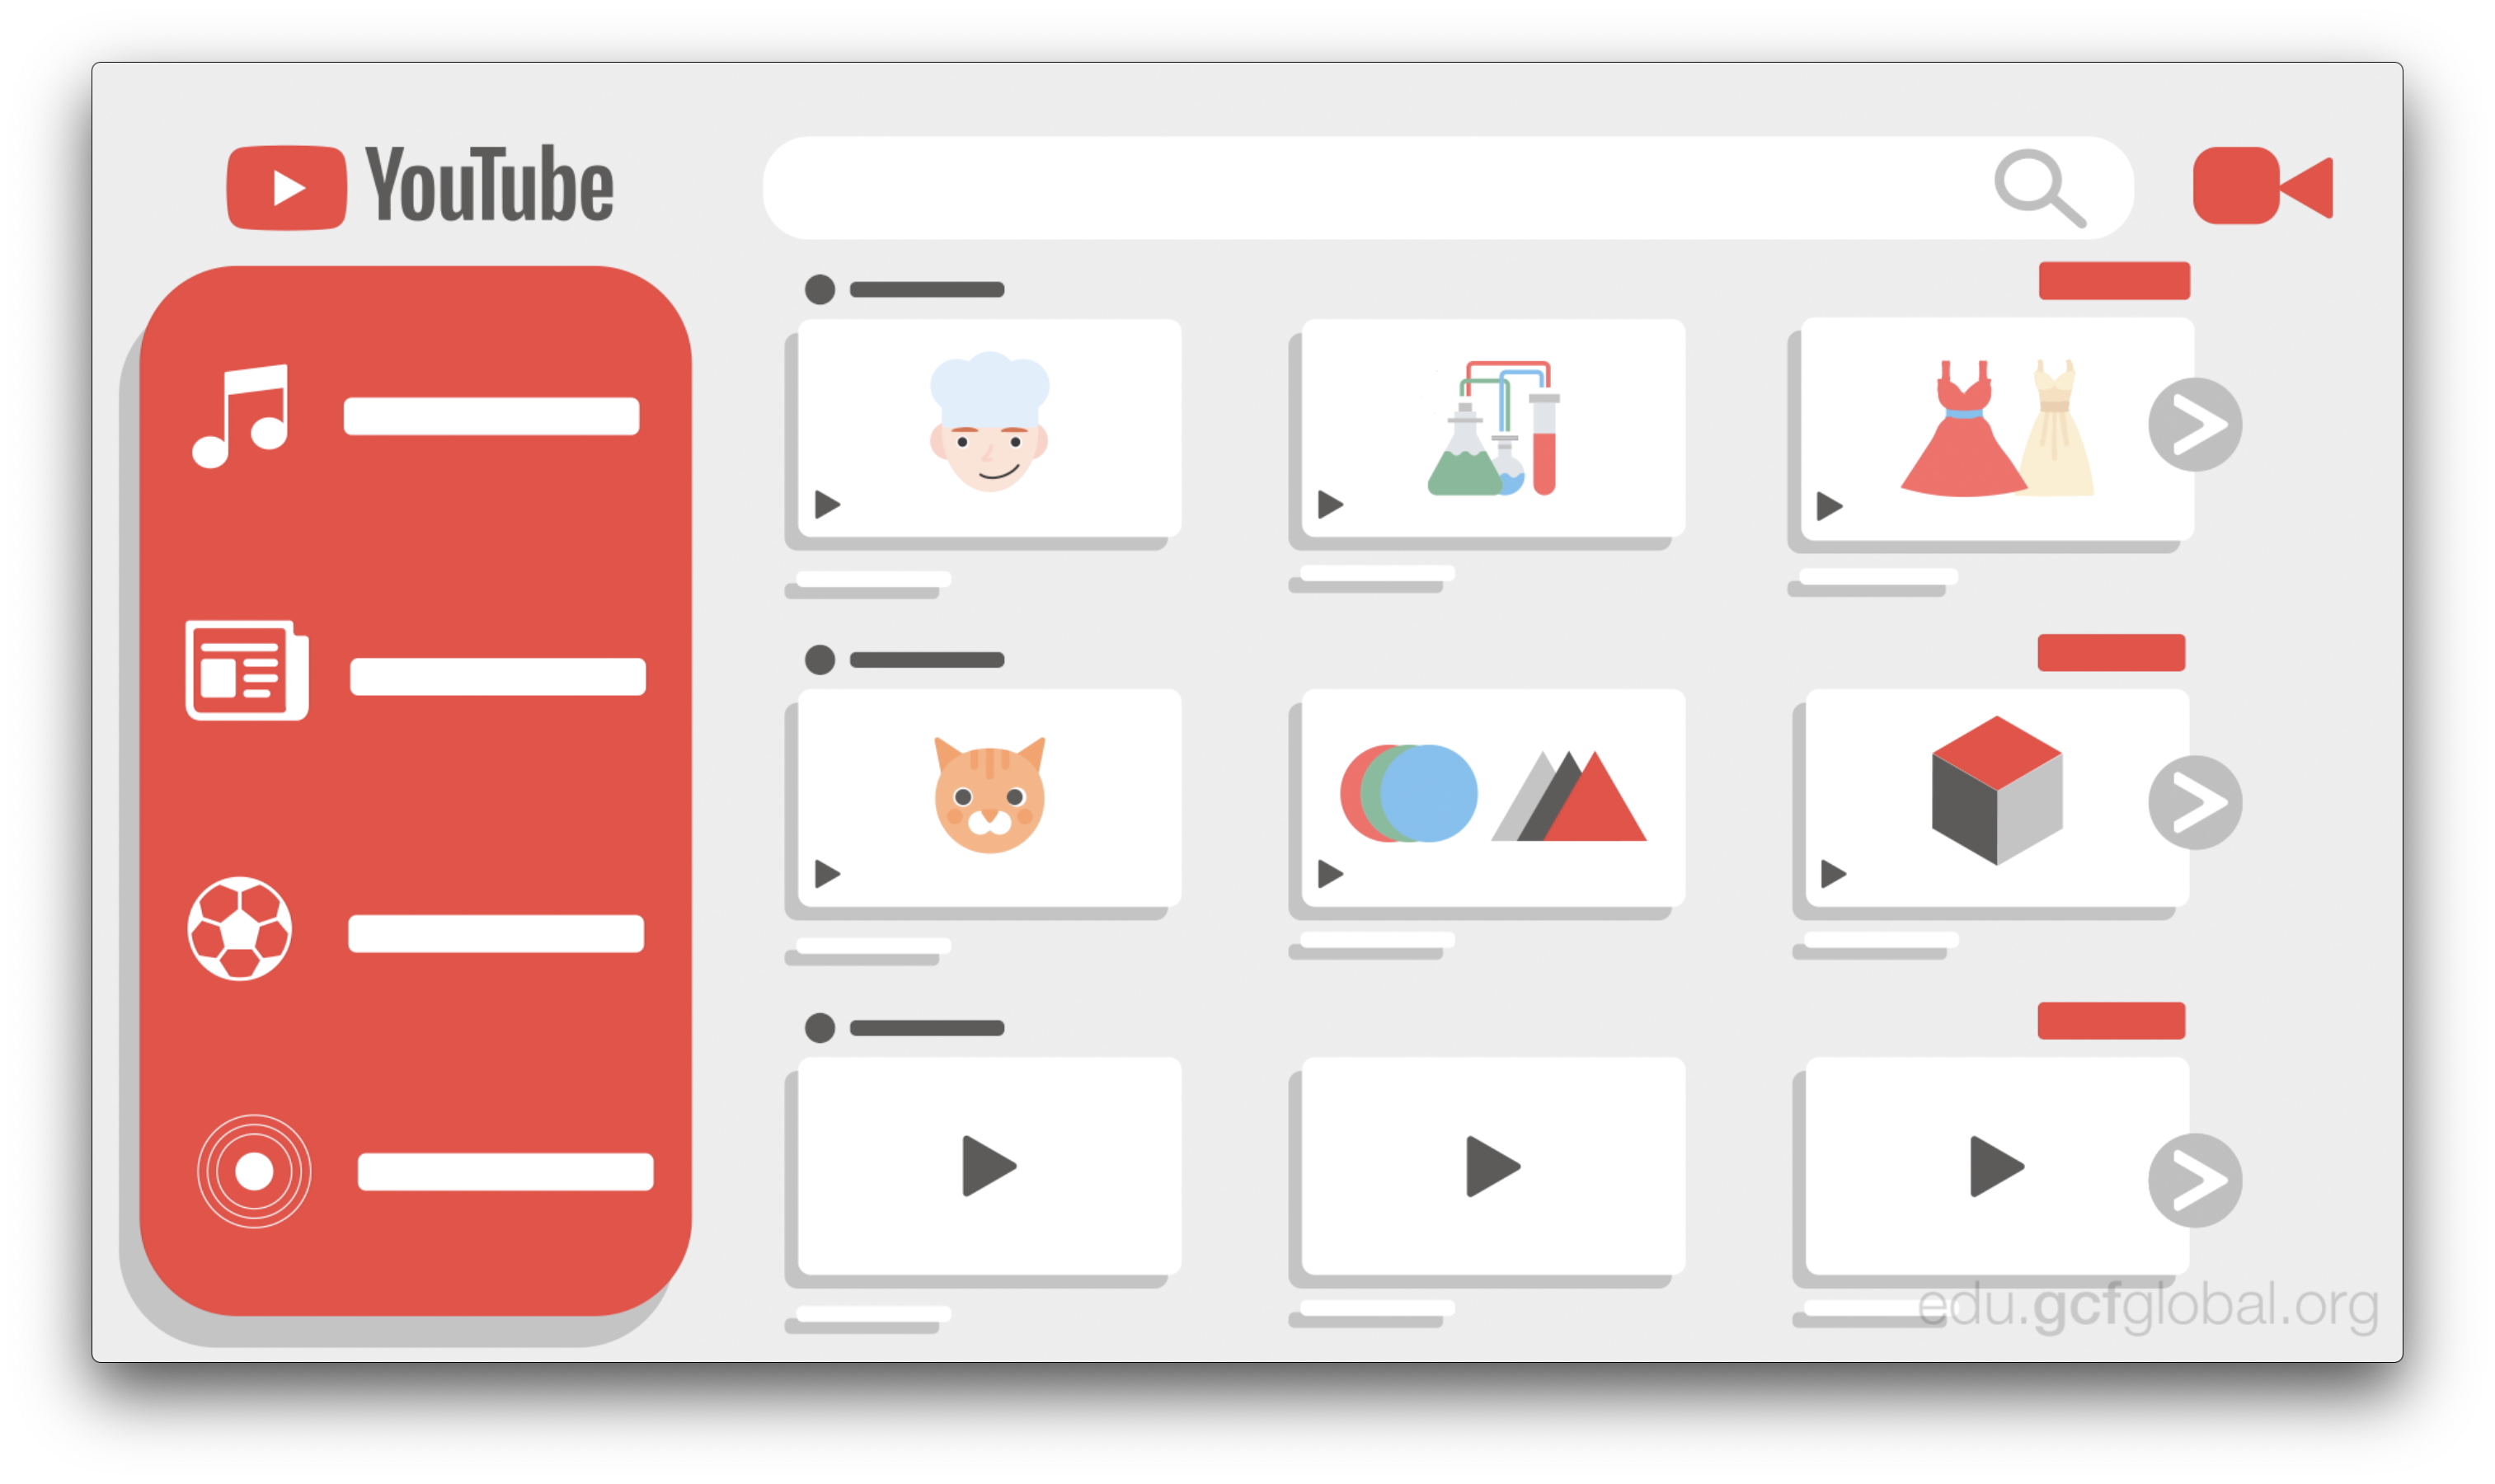 Imagen de los diversos contenidos que ofrece YouTube a sus usuarios.